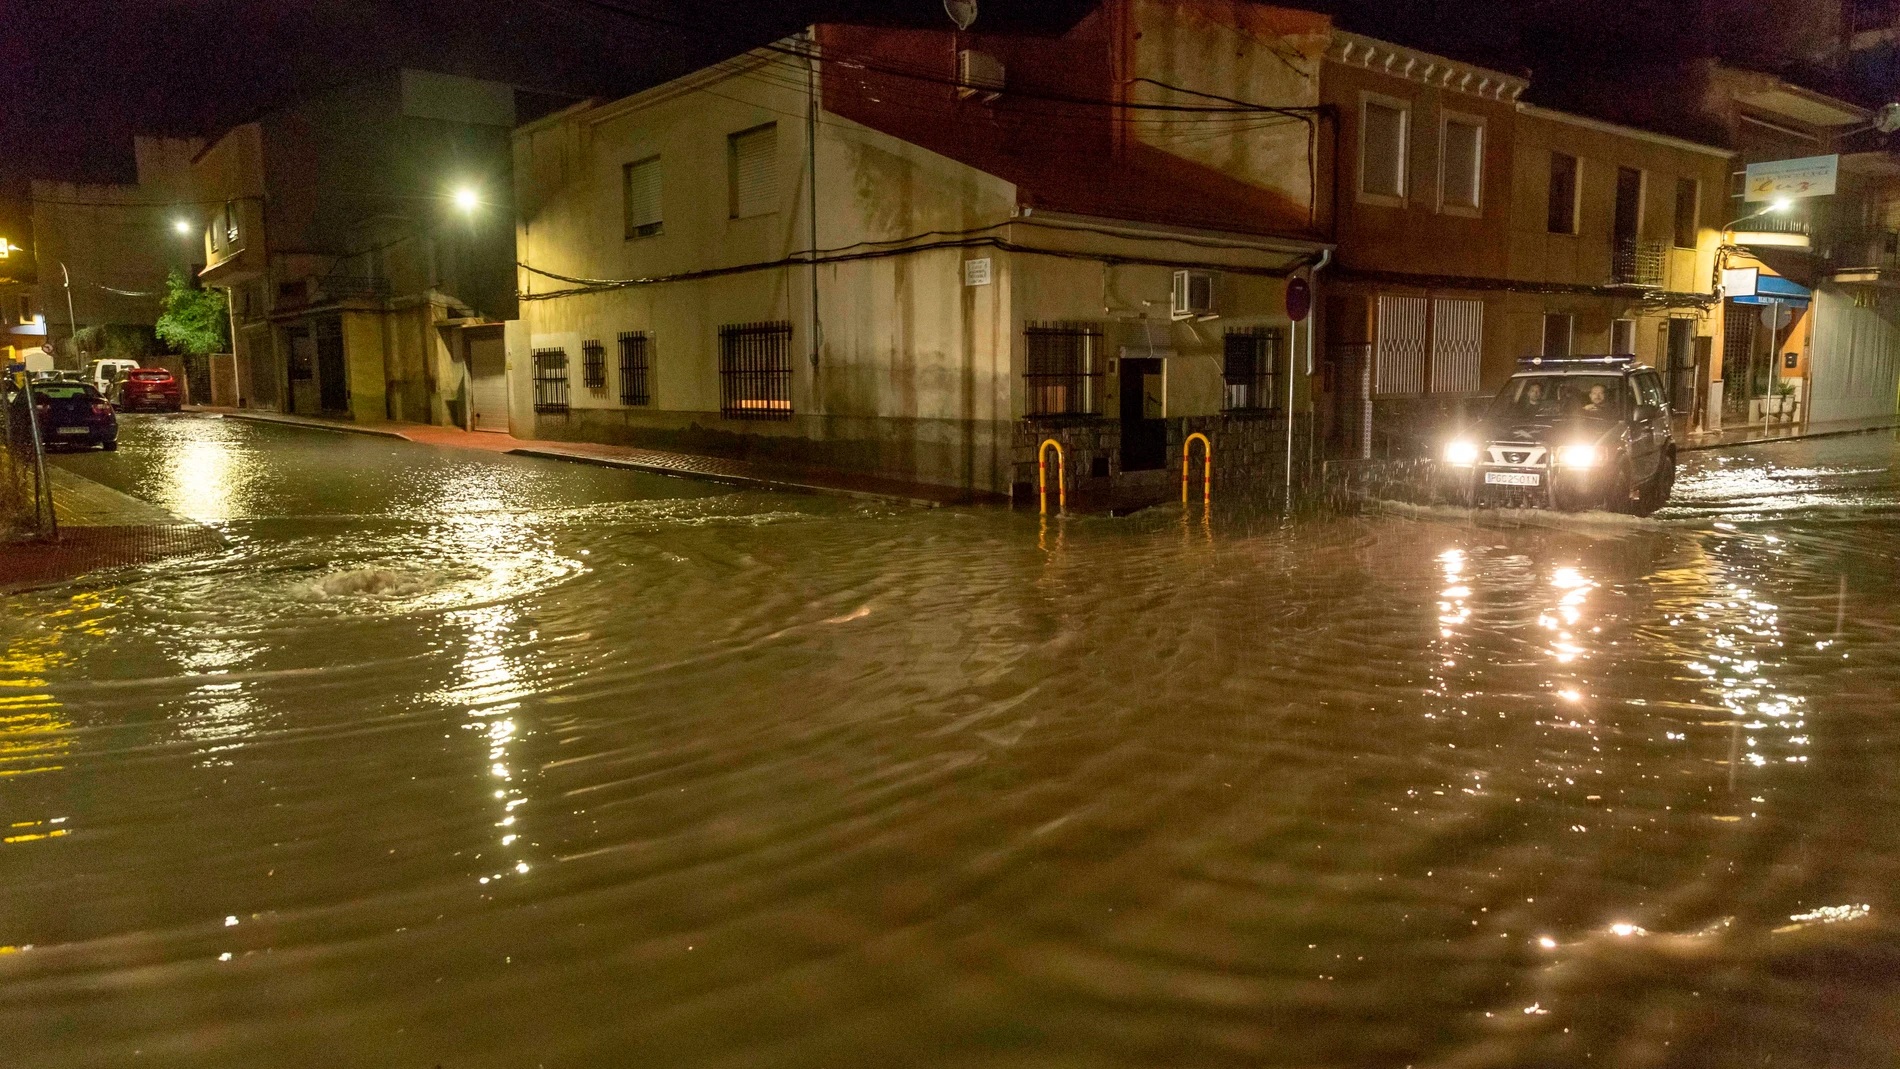 Una patrulla de la guardia civil corta el tráfico en la calle Ramón y Cajal de Archena esta madrugada debido a la inundaciones que se han producido en algunas zonas del municipio.